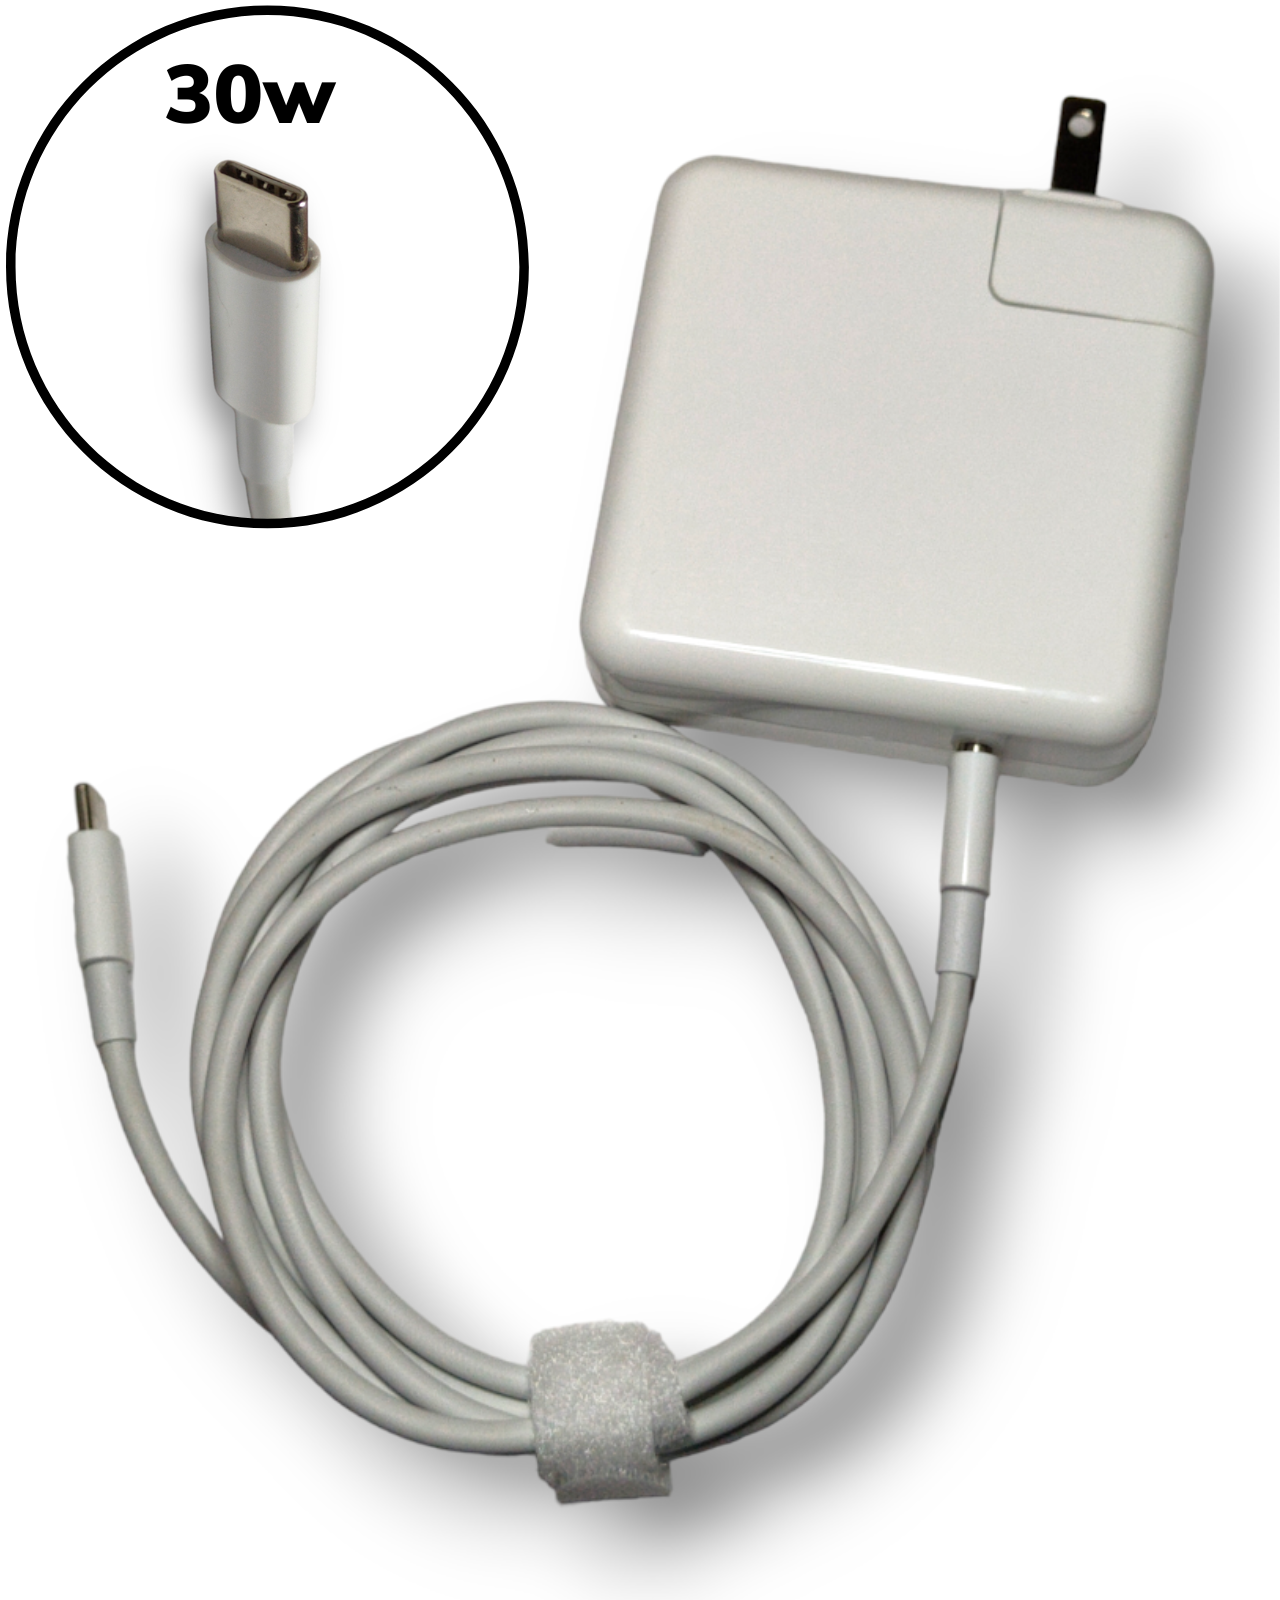 Cargador Compatible con Macbook Air iPhone iPad 30w Usb C Tipo C